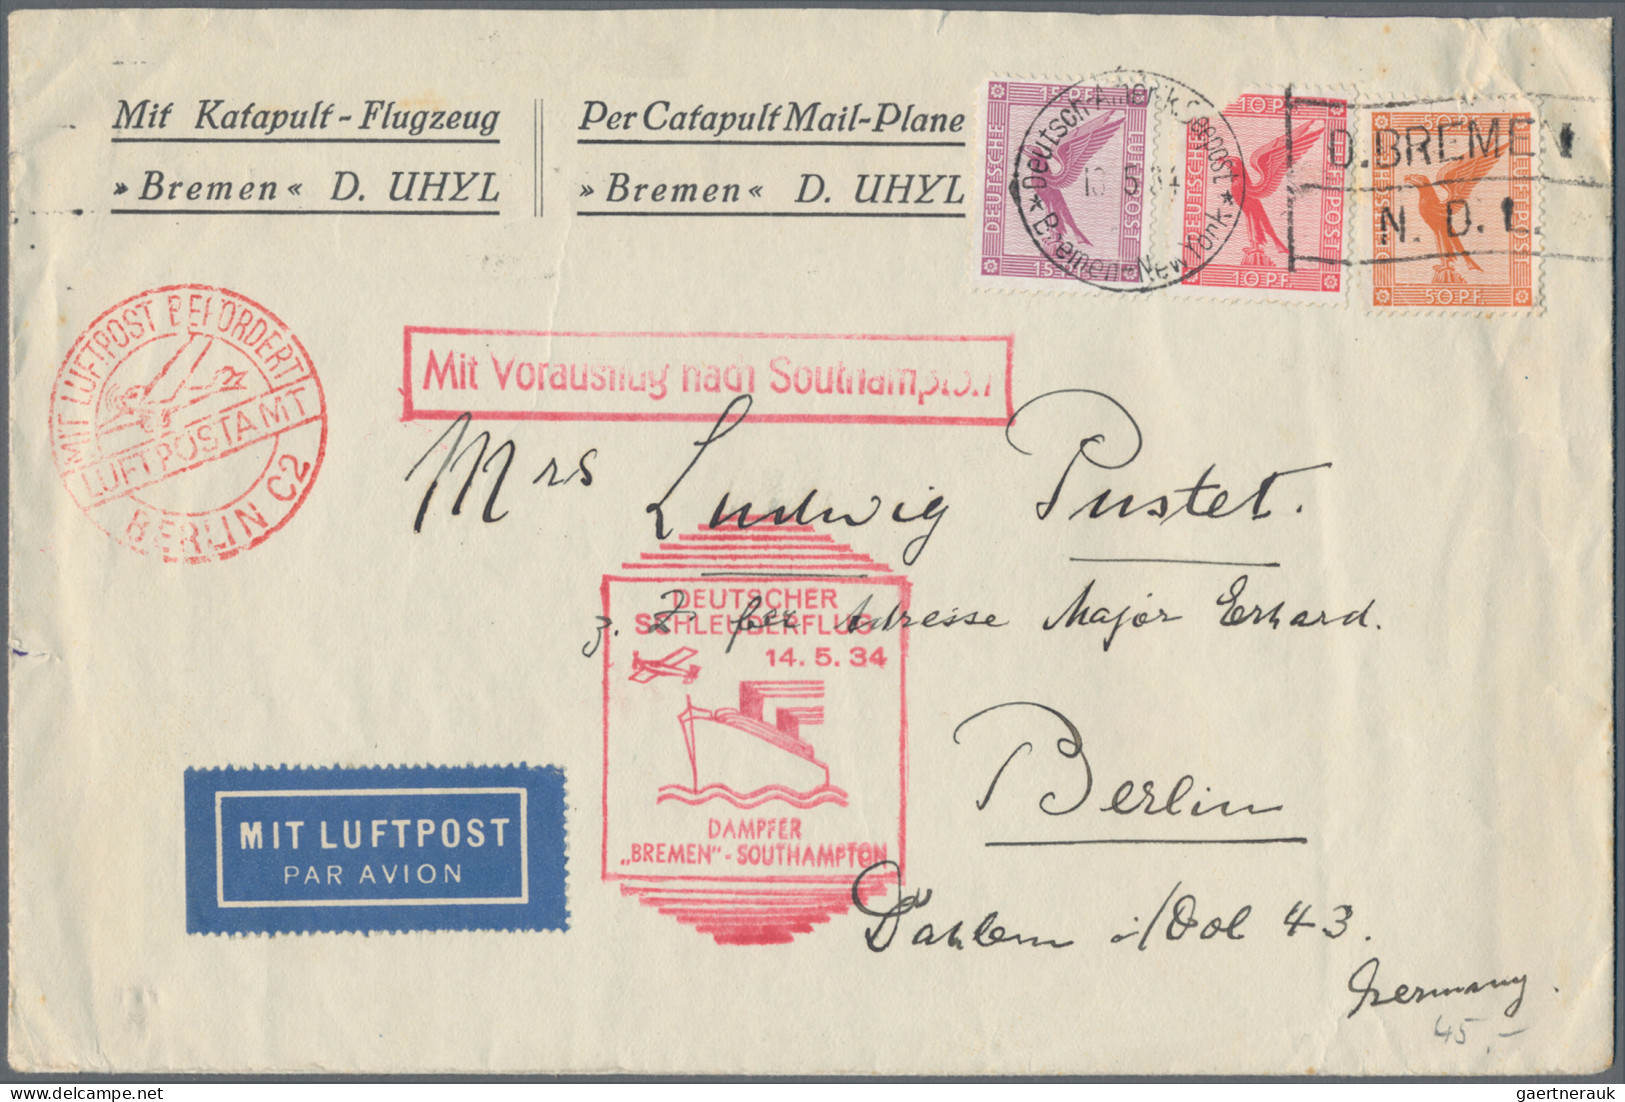 Air Mail - Germany: 1912/1940 (ca.), Konvolut von 87 Briefen Flug- und Zeppelinp